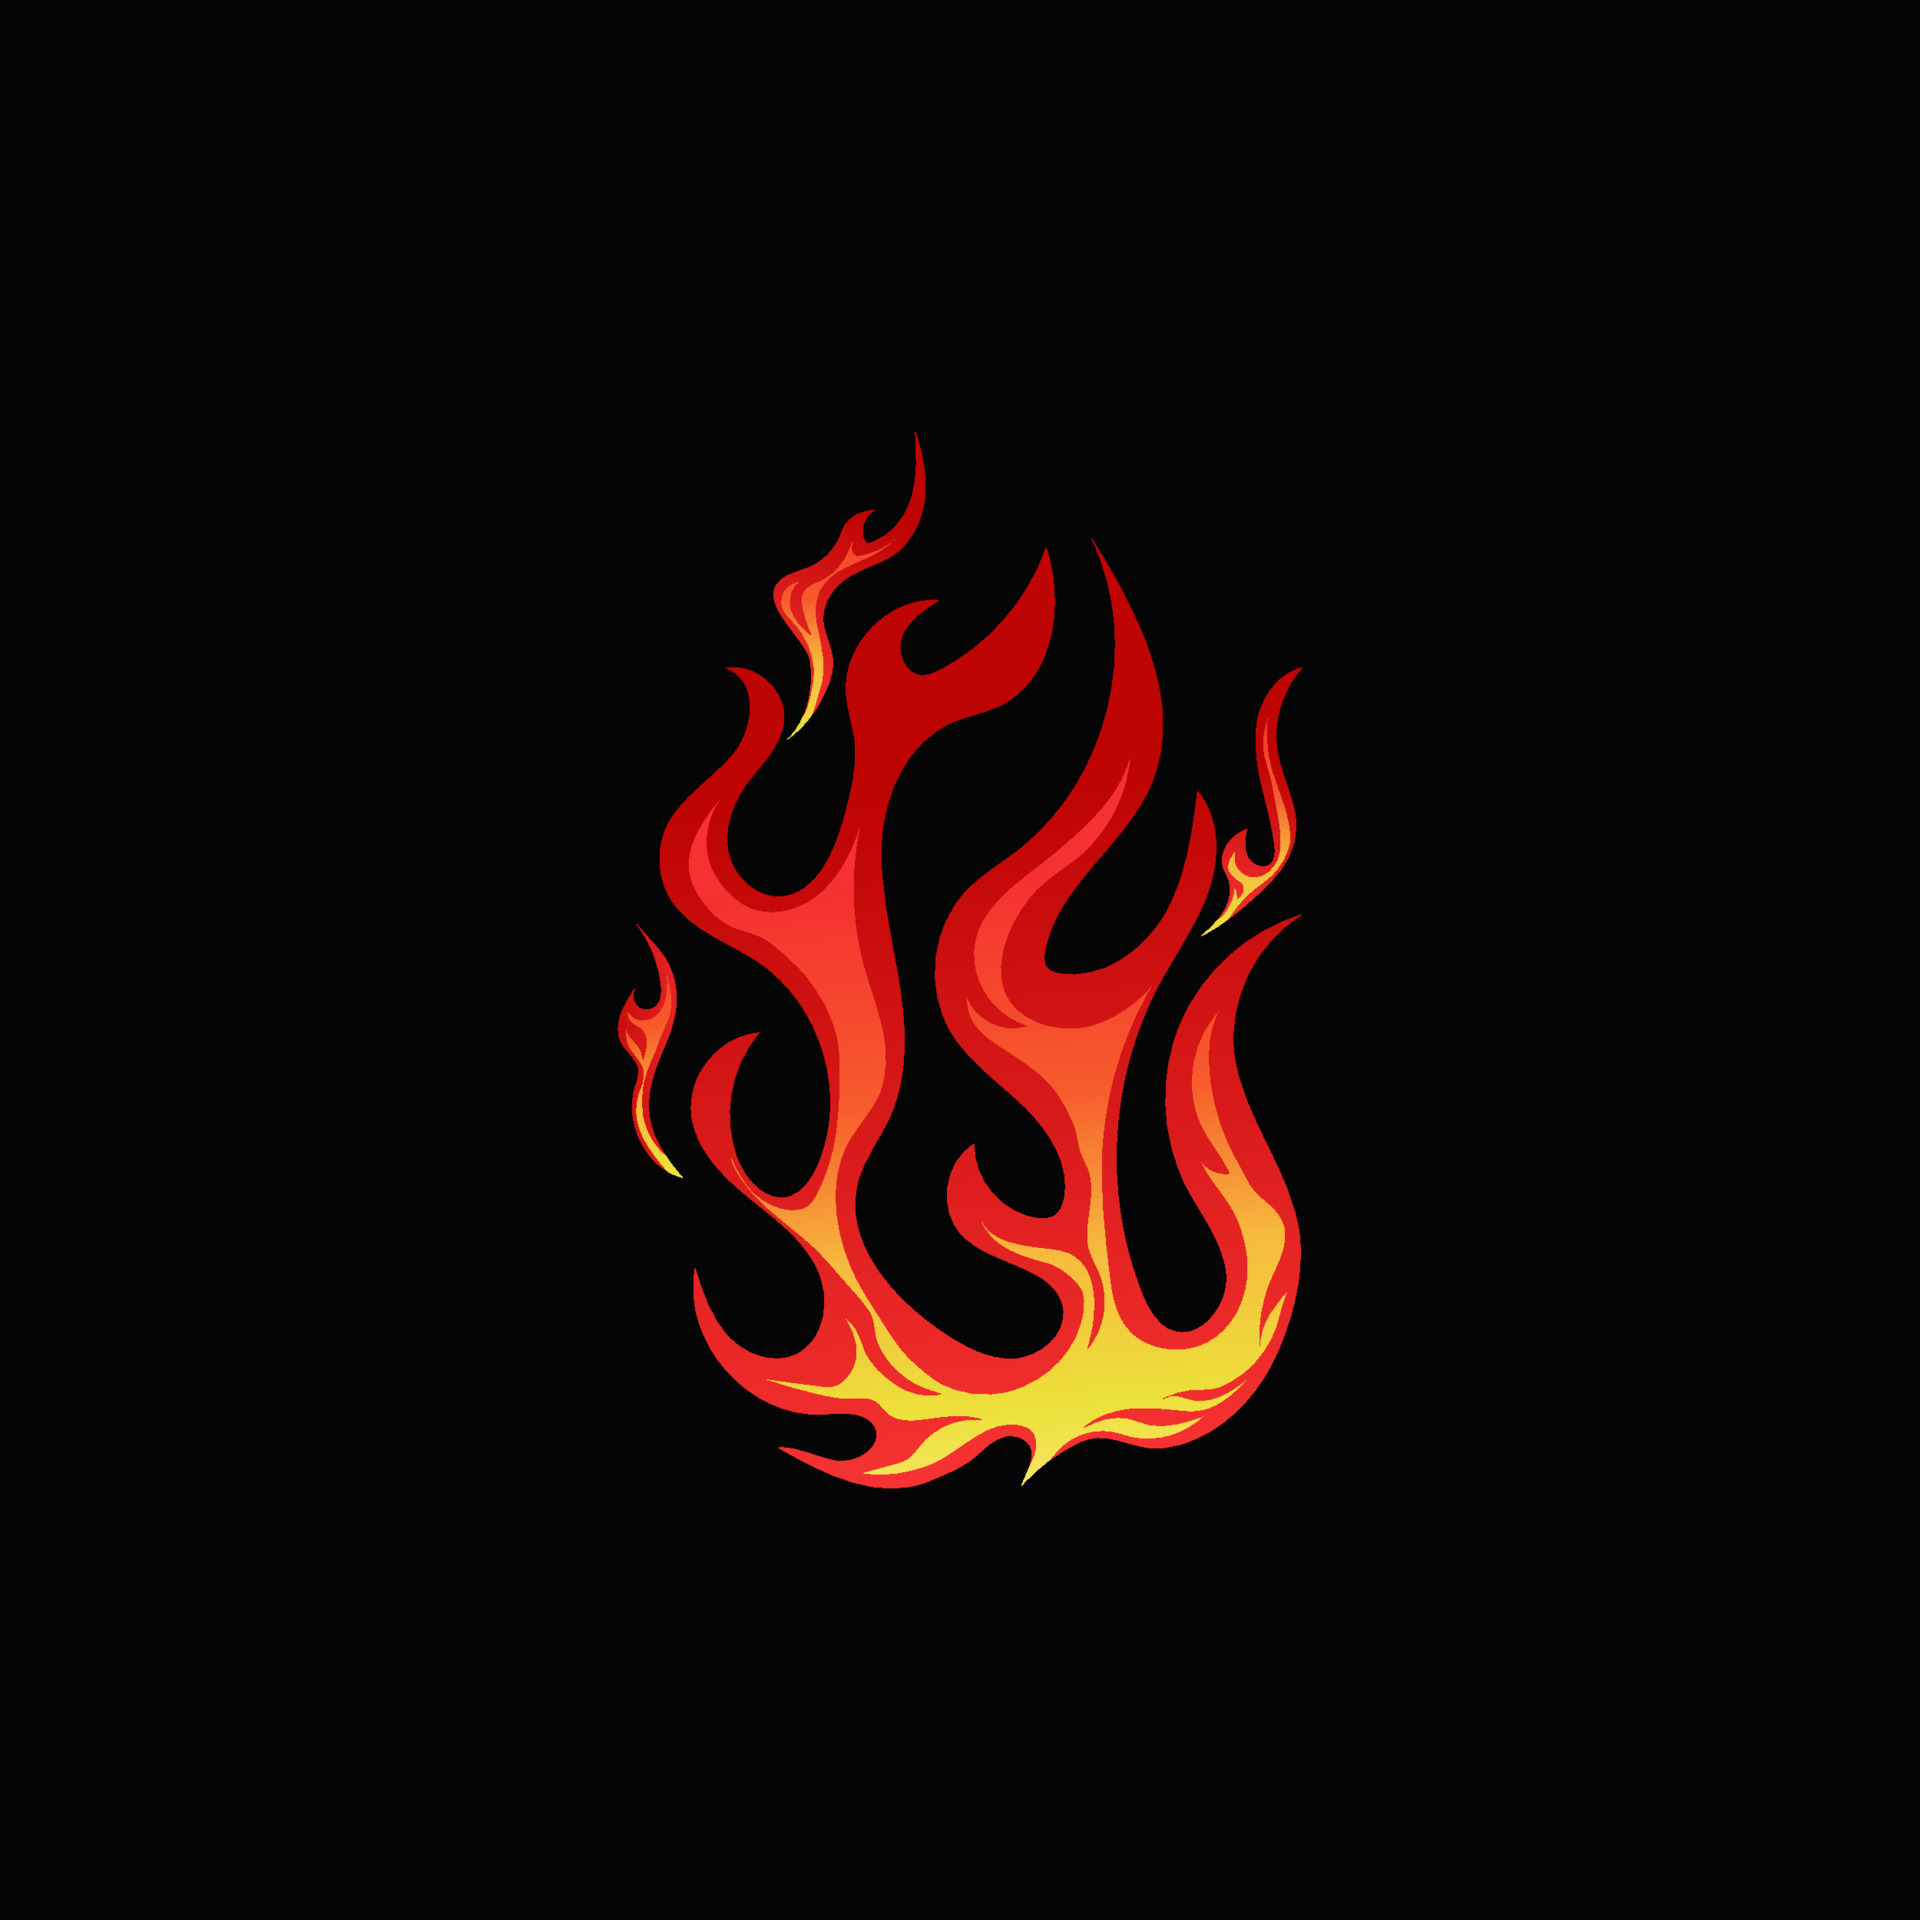 Conjunto de silhueta de chama de fogo. fogueira de alargamento de ícone,  elementos de fogo pequenos e grandes brilhantes. ilustração em vetor  elementos simples em chamas.